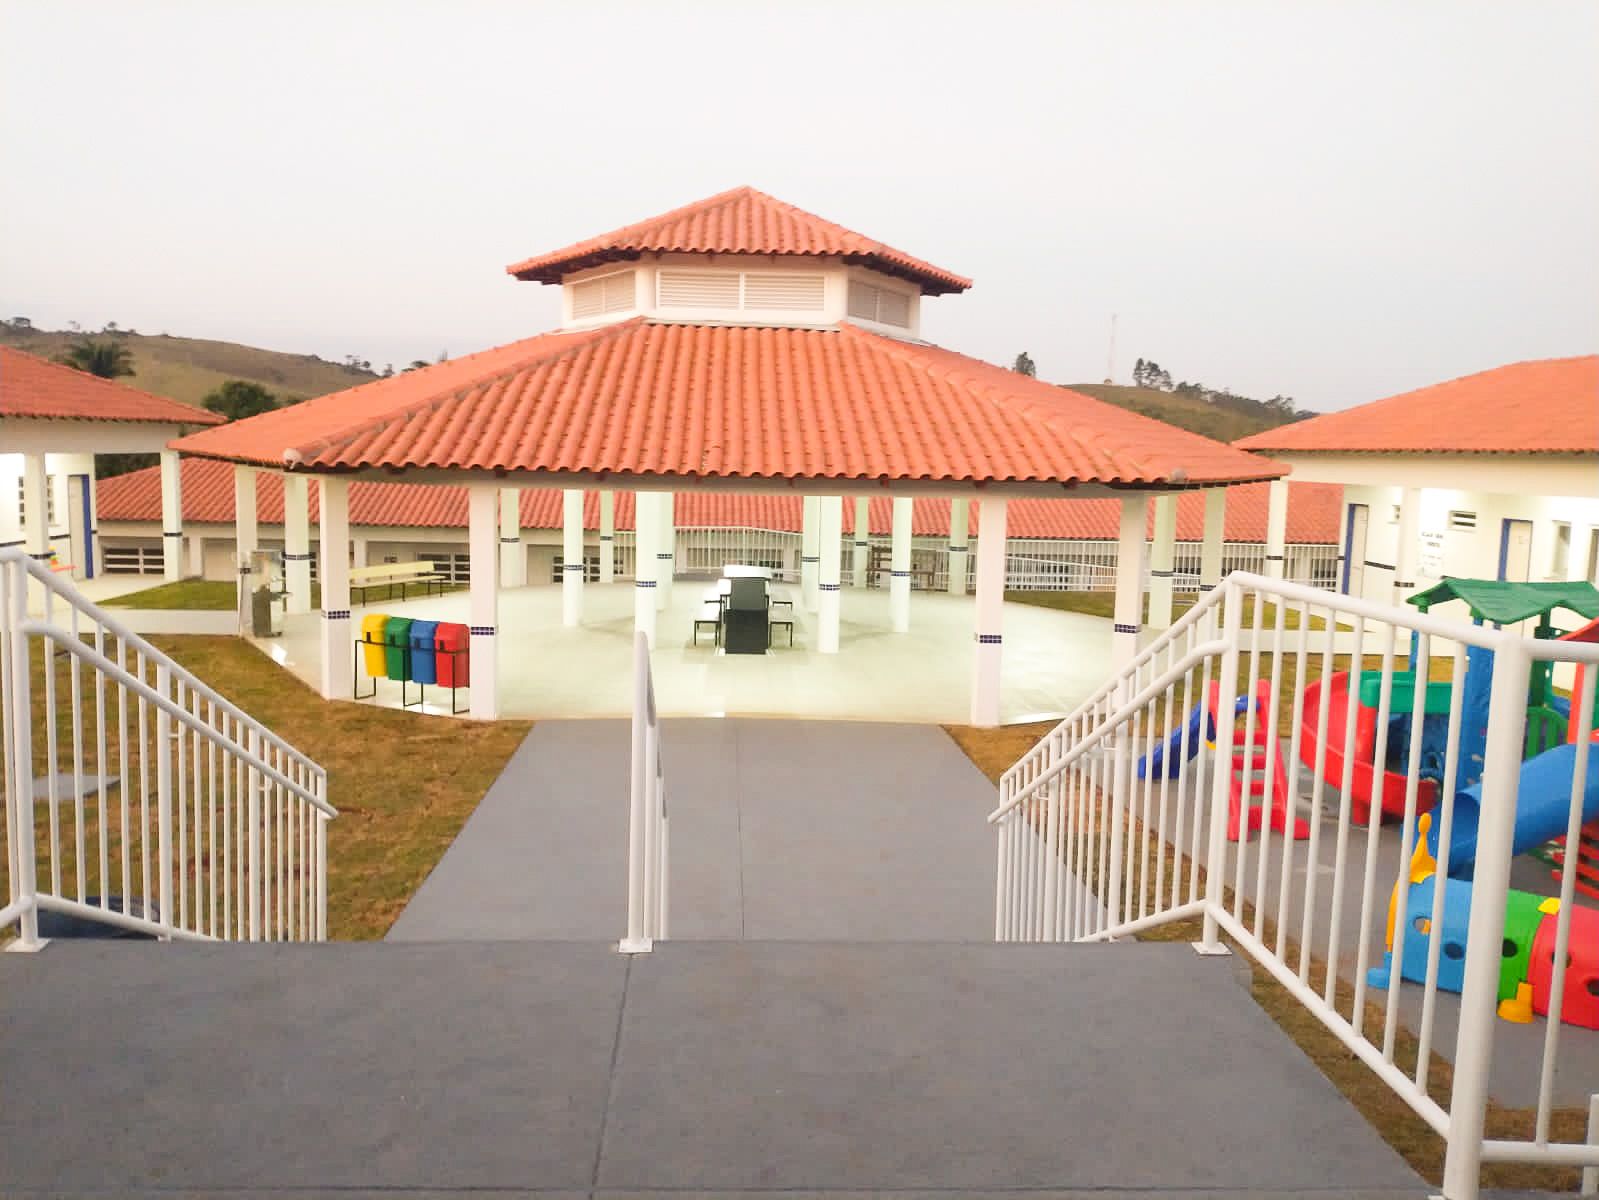 Escola municipal em Desterro de Entre Rios é construída com recursos do Projeto Mãos Dadas do Governo de Minas